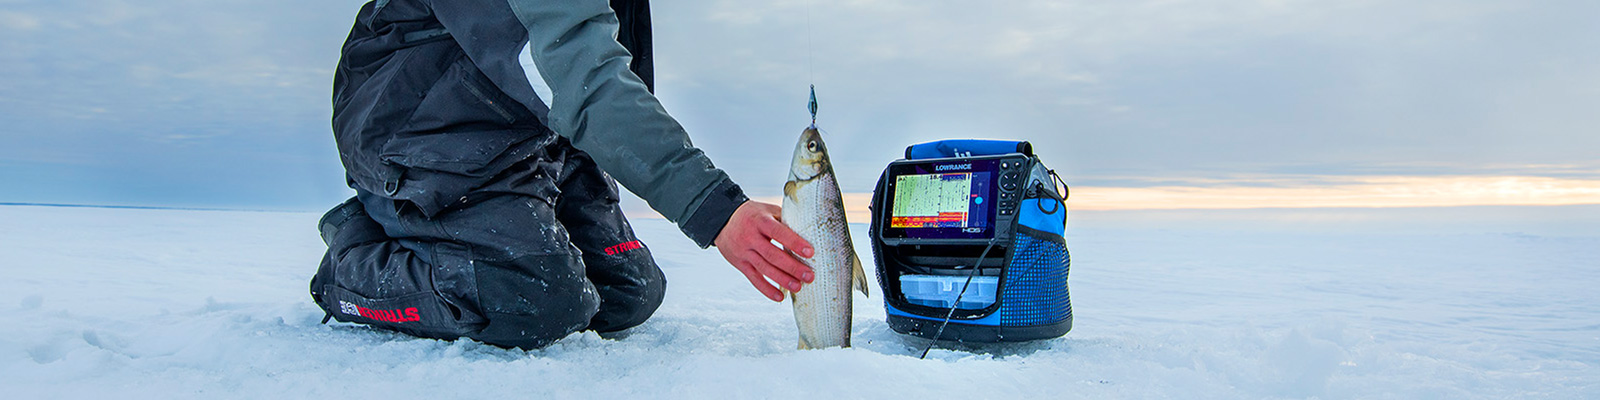 Эхолот для зимней рыбалки, следим за рыбой в реальном времени